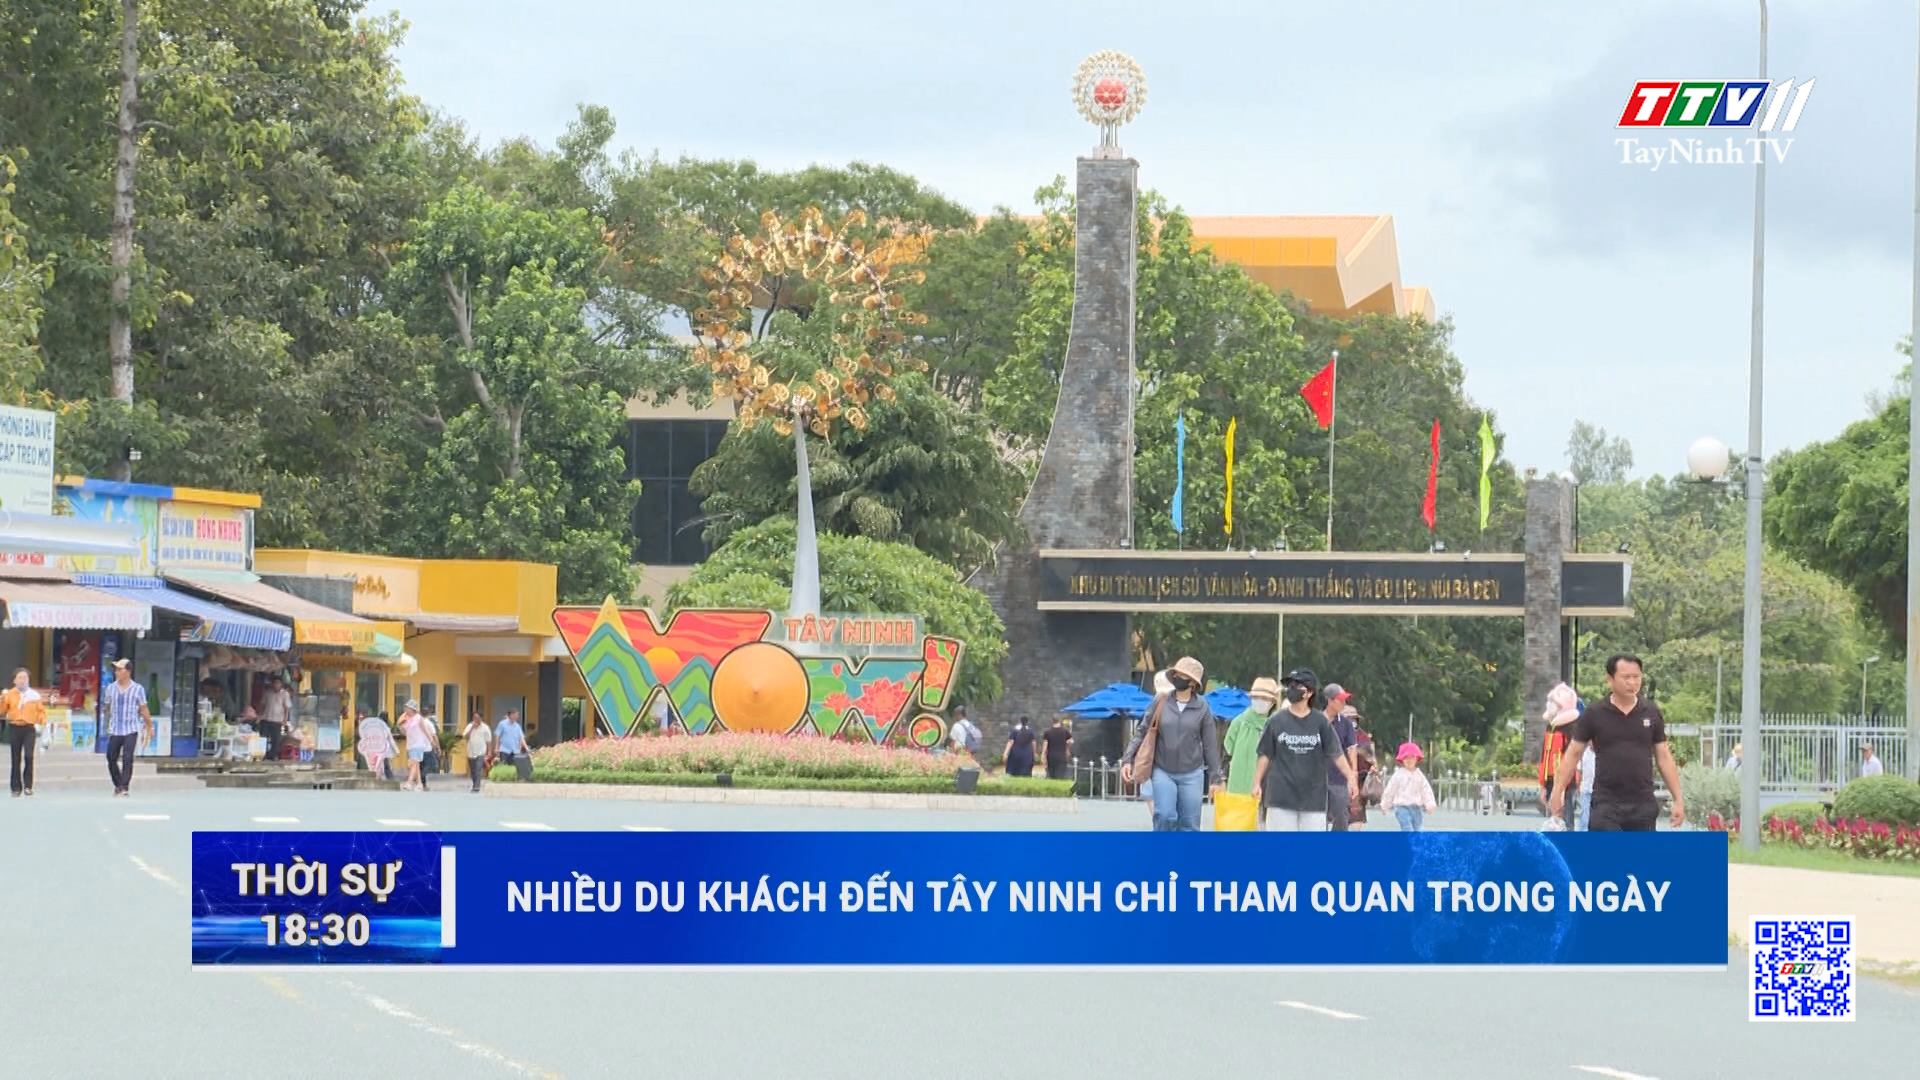 Nhiều du khách đến Tây Ninh chỉ tham quan trong ngày | TayNinhTV